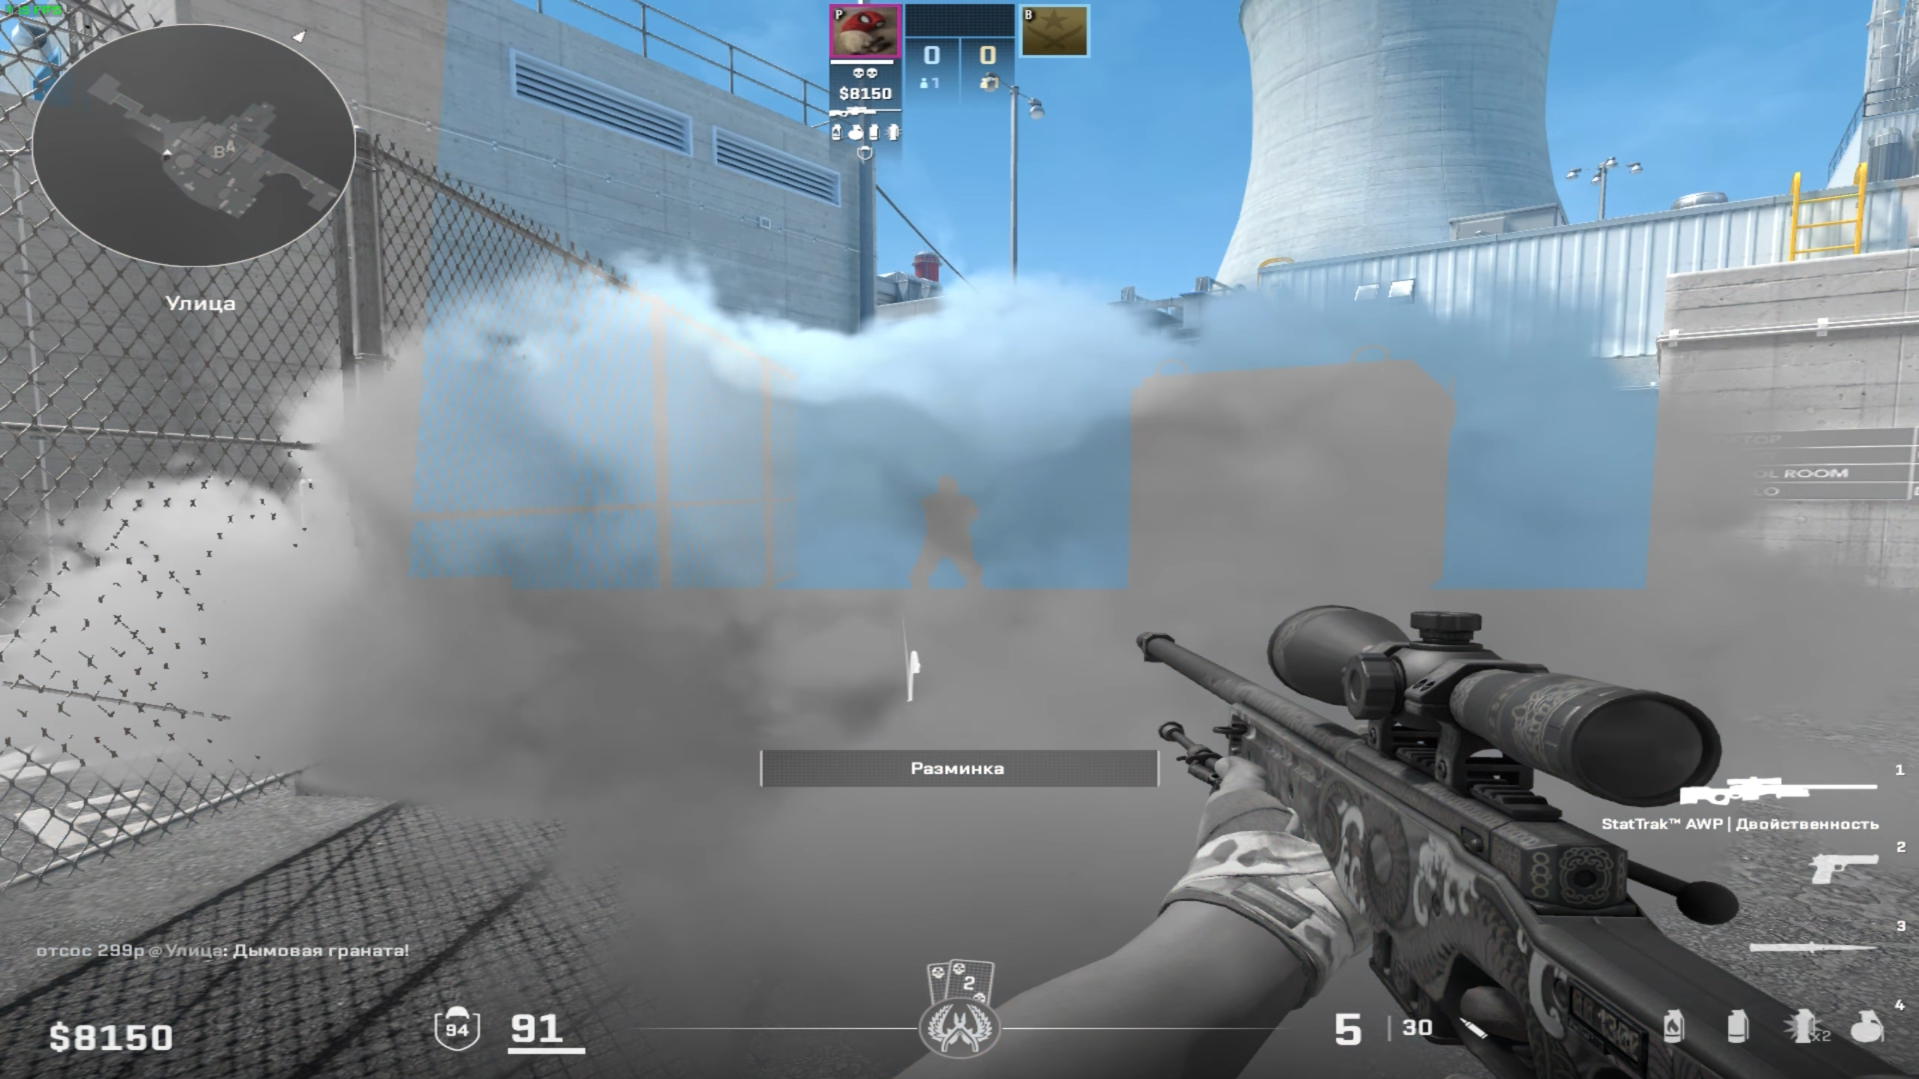 Nhìn kĩ, người chơi có thể nhìn xuyên khói để thấy đối thủ - Ảnh màn hình được chụp bởi sk0v0r0daya